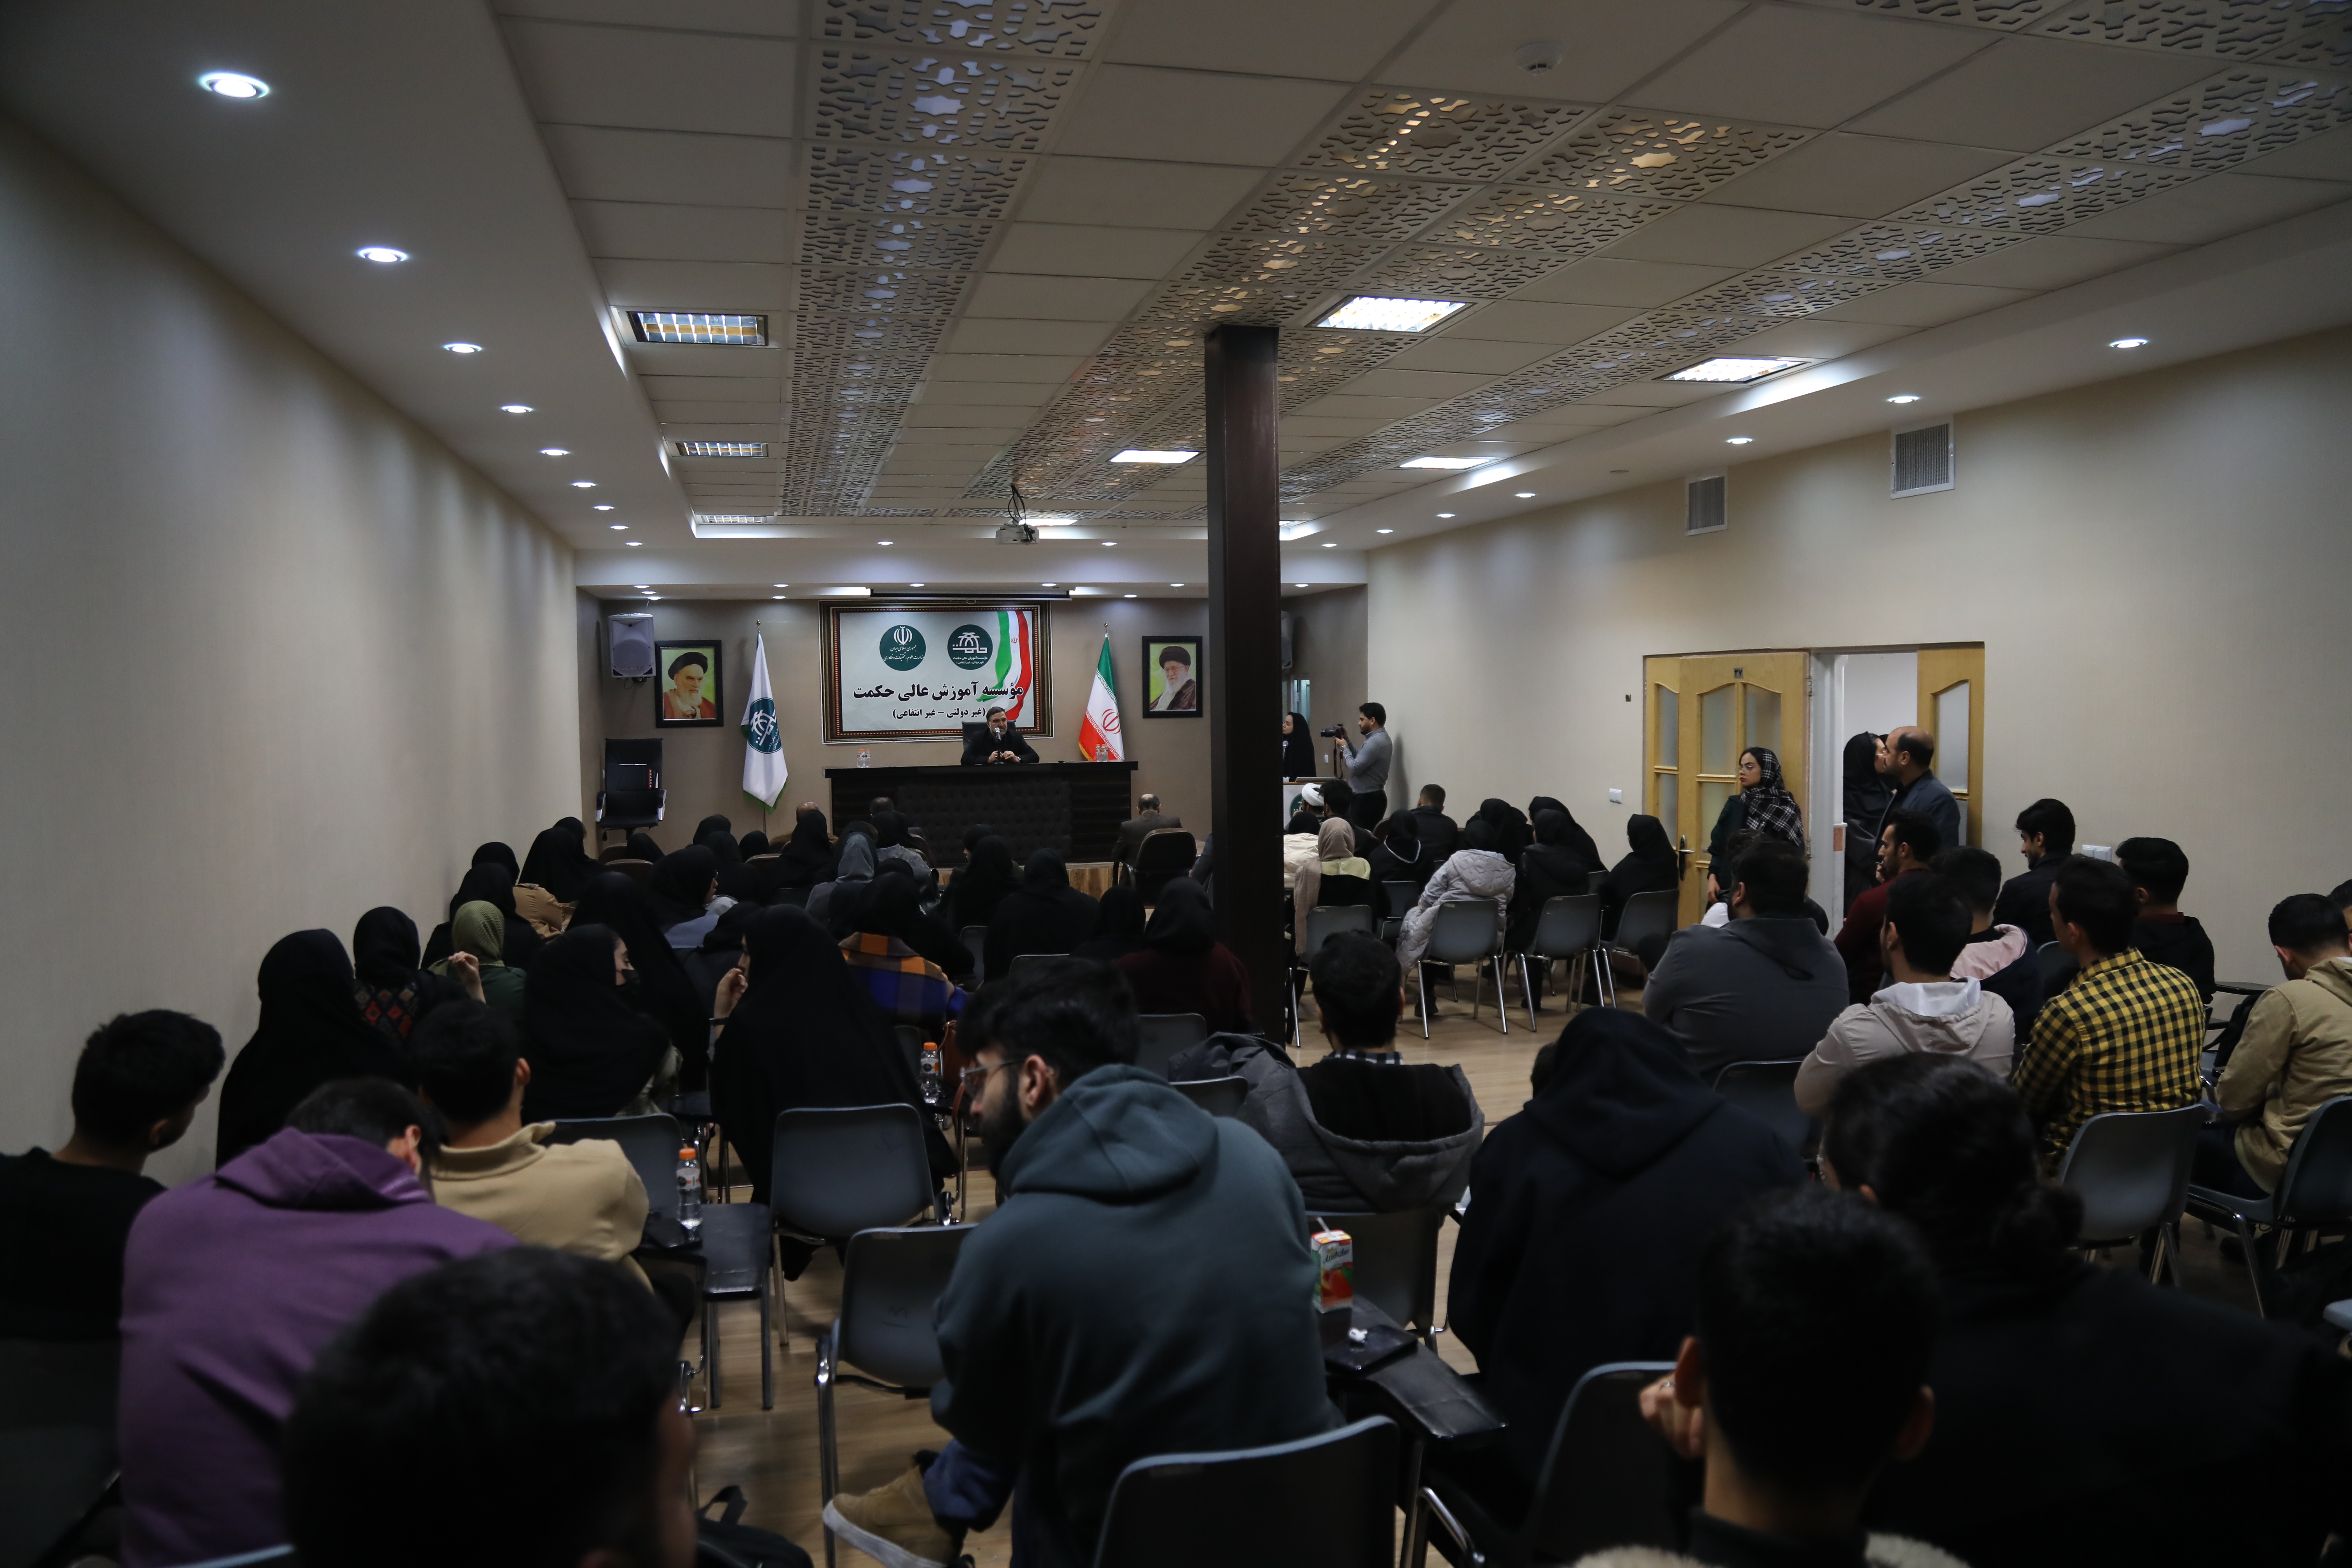 کرسی آزاد اندیشی “مطالبات دانشجویان از حاکمیت” در موسسه آموزش عالی حکمت برگزار شد